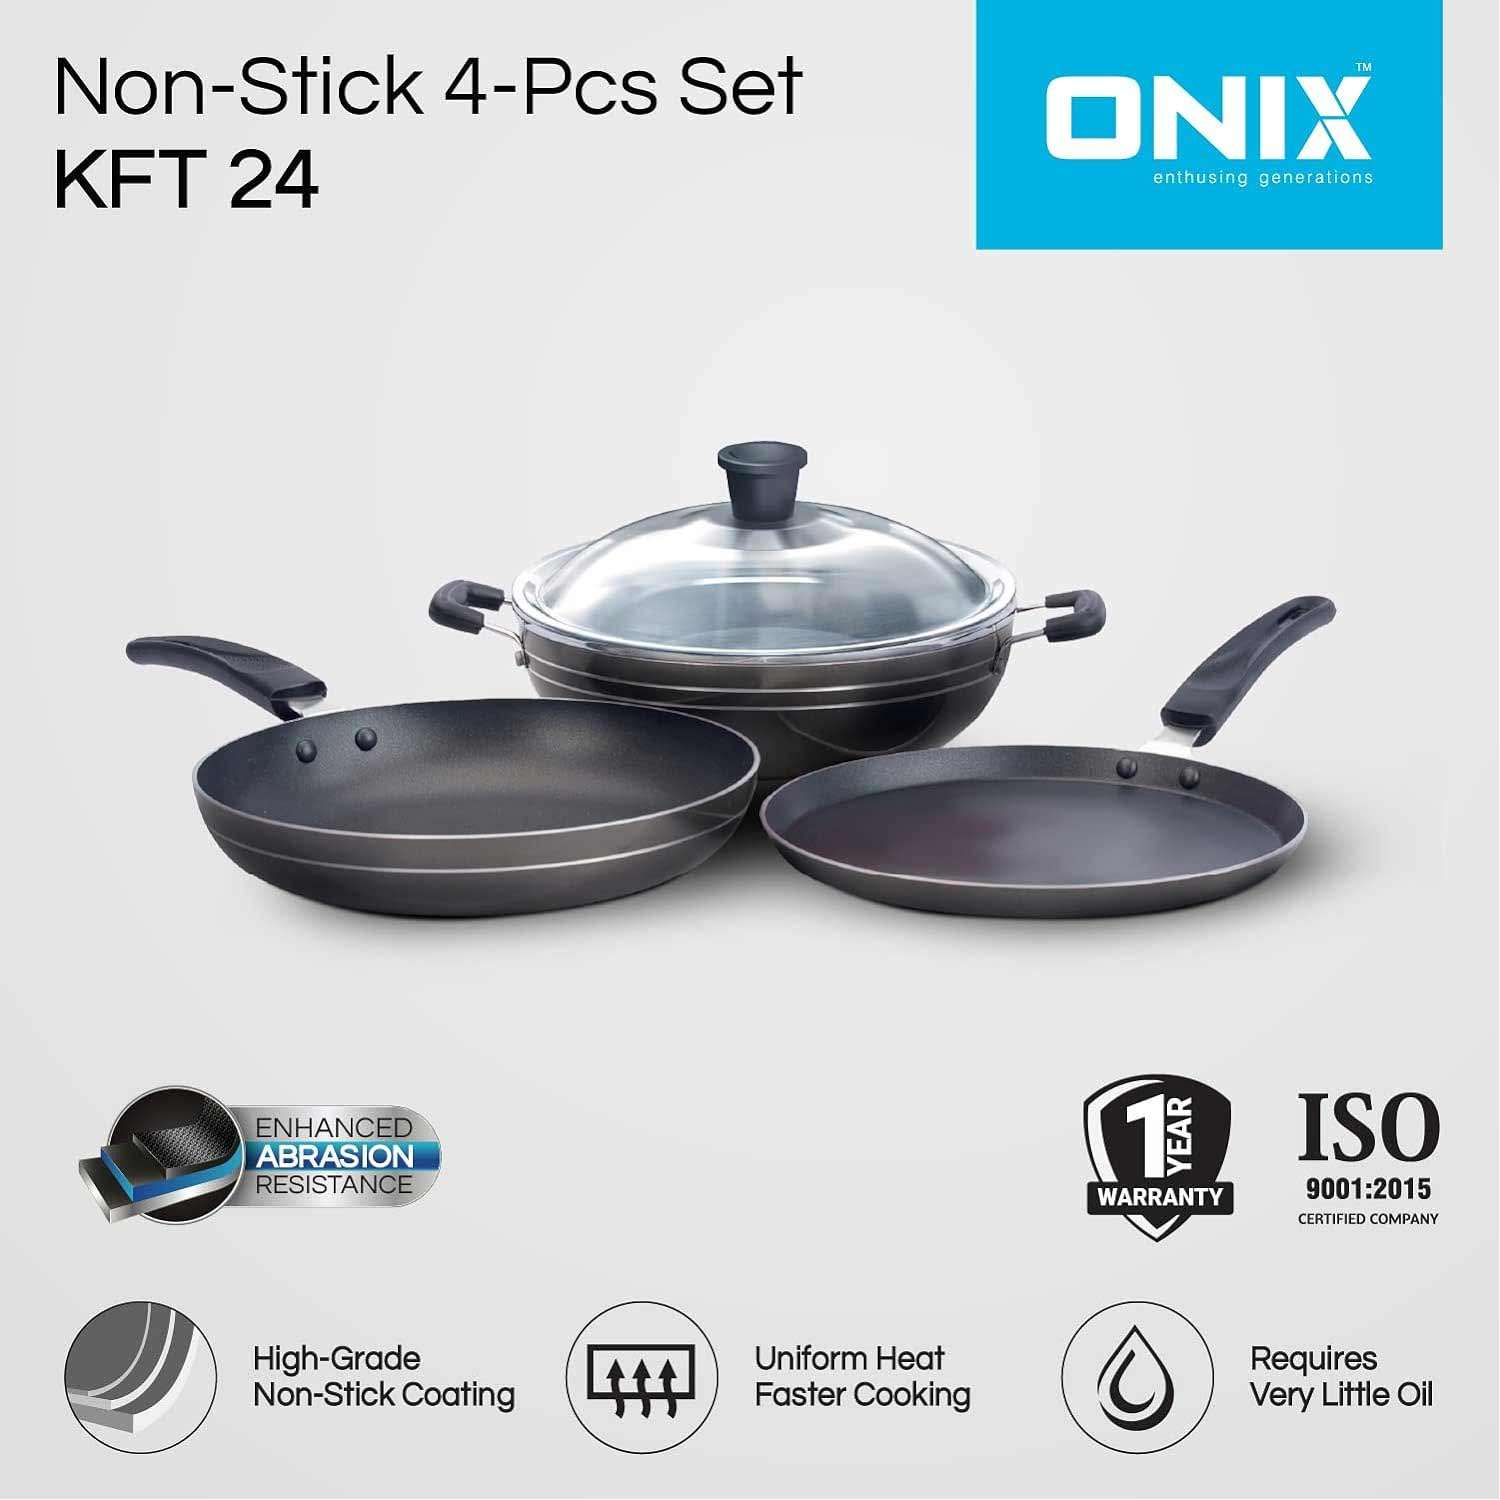 ONIX enthusing generationsIS KTF 444 Nonstick Aluminium Induction Base Cookware Set, Kadai Pan, Tawa Pan, Fry Pan (Black)